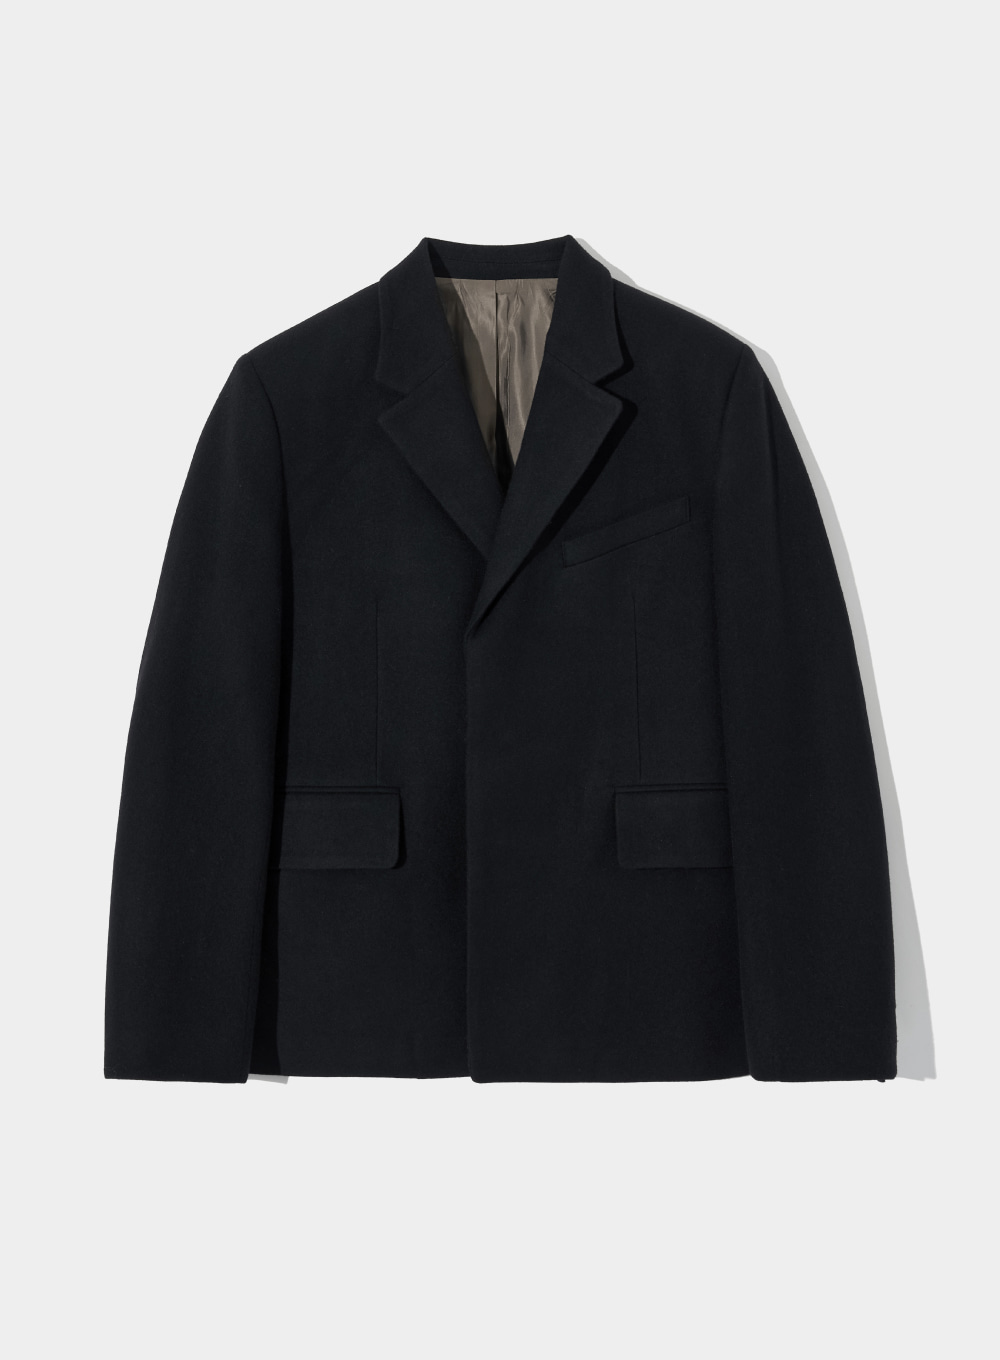 [10월 9일 예약배송]Modern Classic 2-Button Wool Jacket - Classic Black